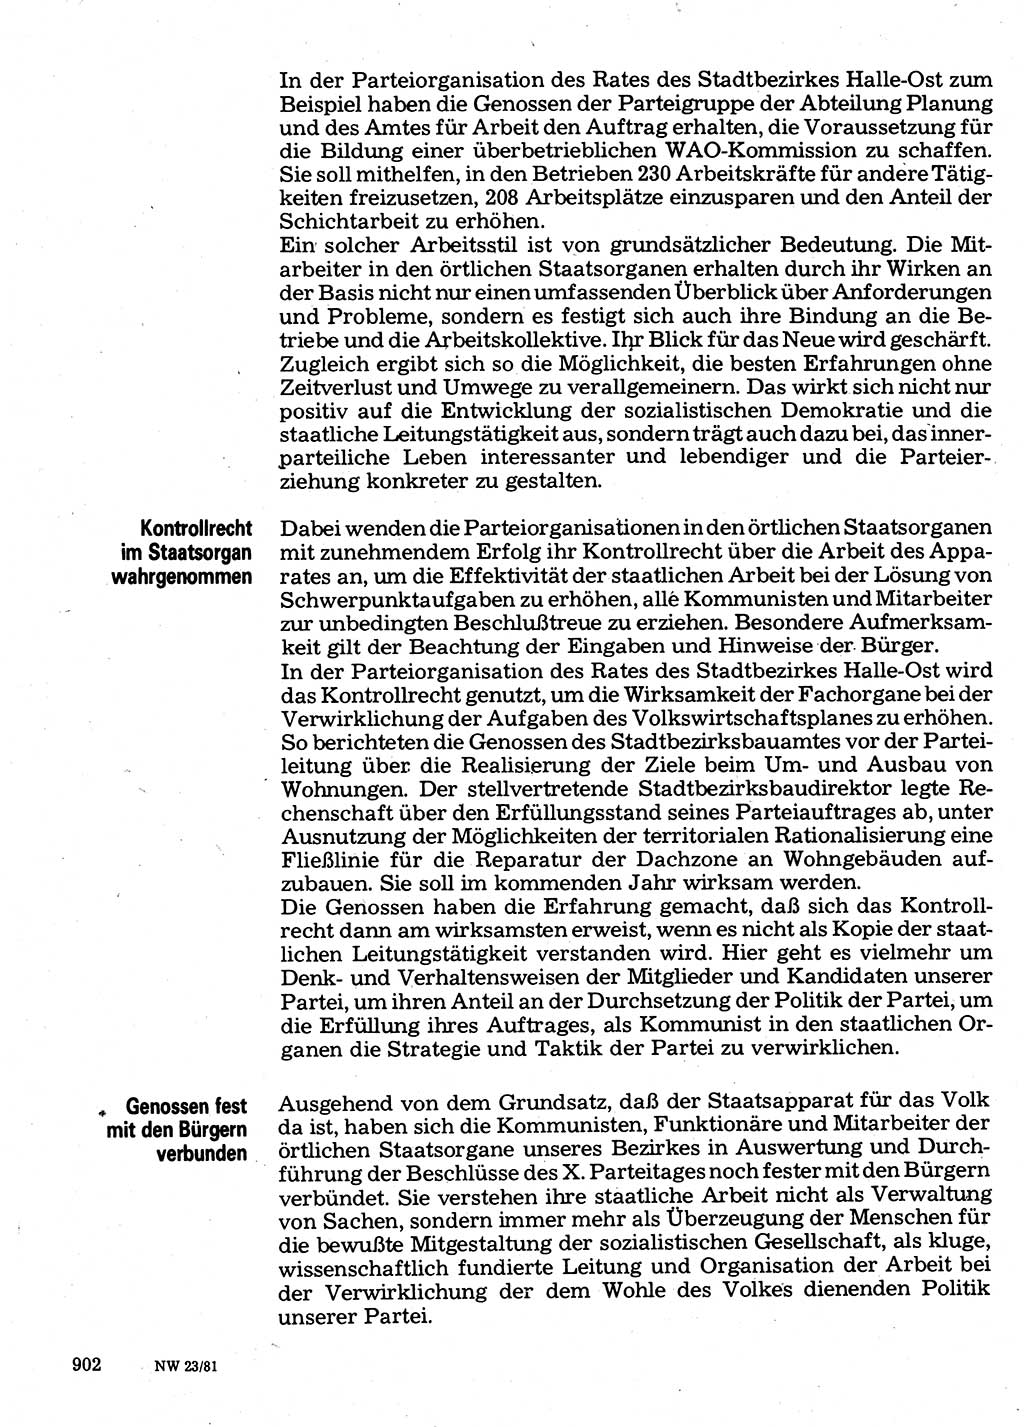 Neuer Weg (NW), Organ des Zentralkomitees (ZK) der SED (Sozialistische Einheitspartei Deutschlands) für Fragen des Parteilebens, 36. Jahrgang [Deutsche Demokratische Republik (DDR)] 1981, Seite 902 (NW ZK SED DDR 1981, S. 902)